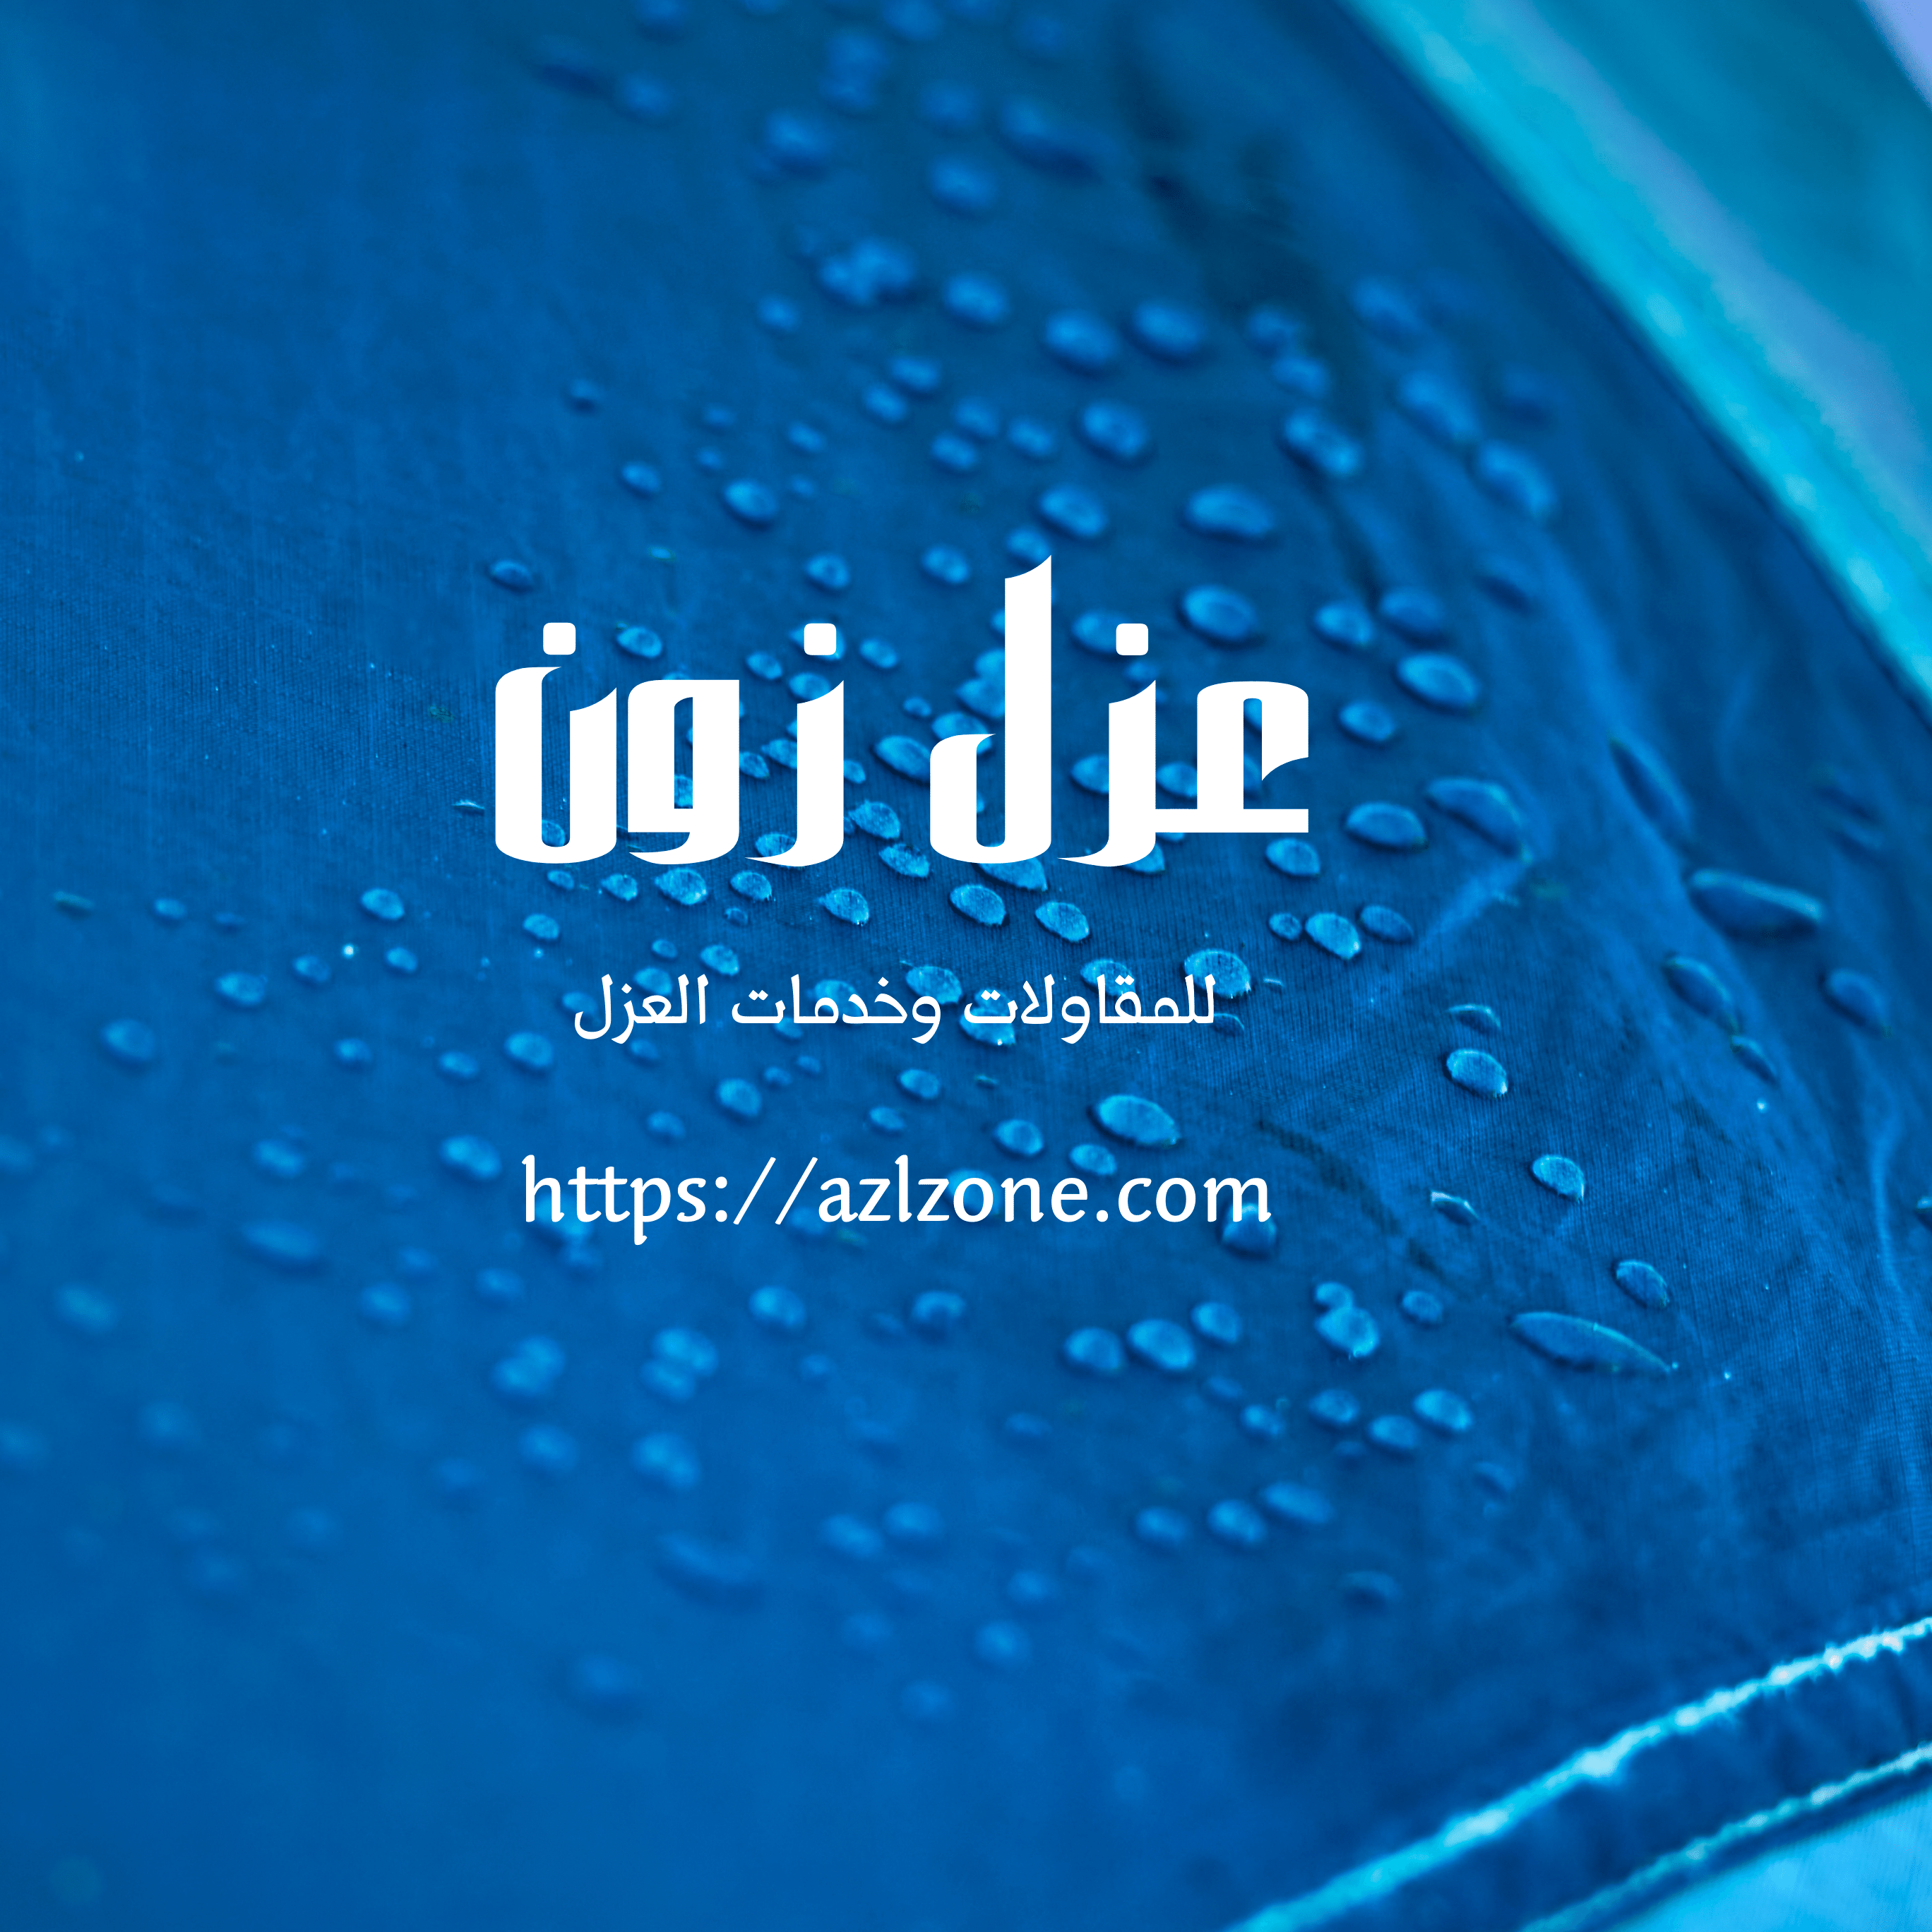 شركة عزل خزانات وتنظيف مياه بنزوي عمان خصم 40%